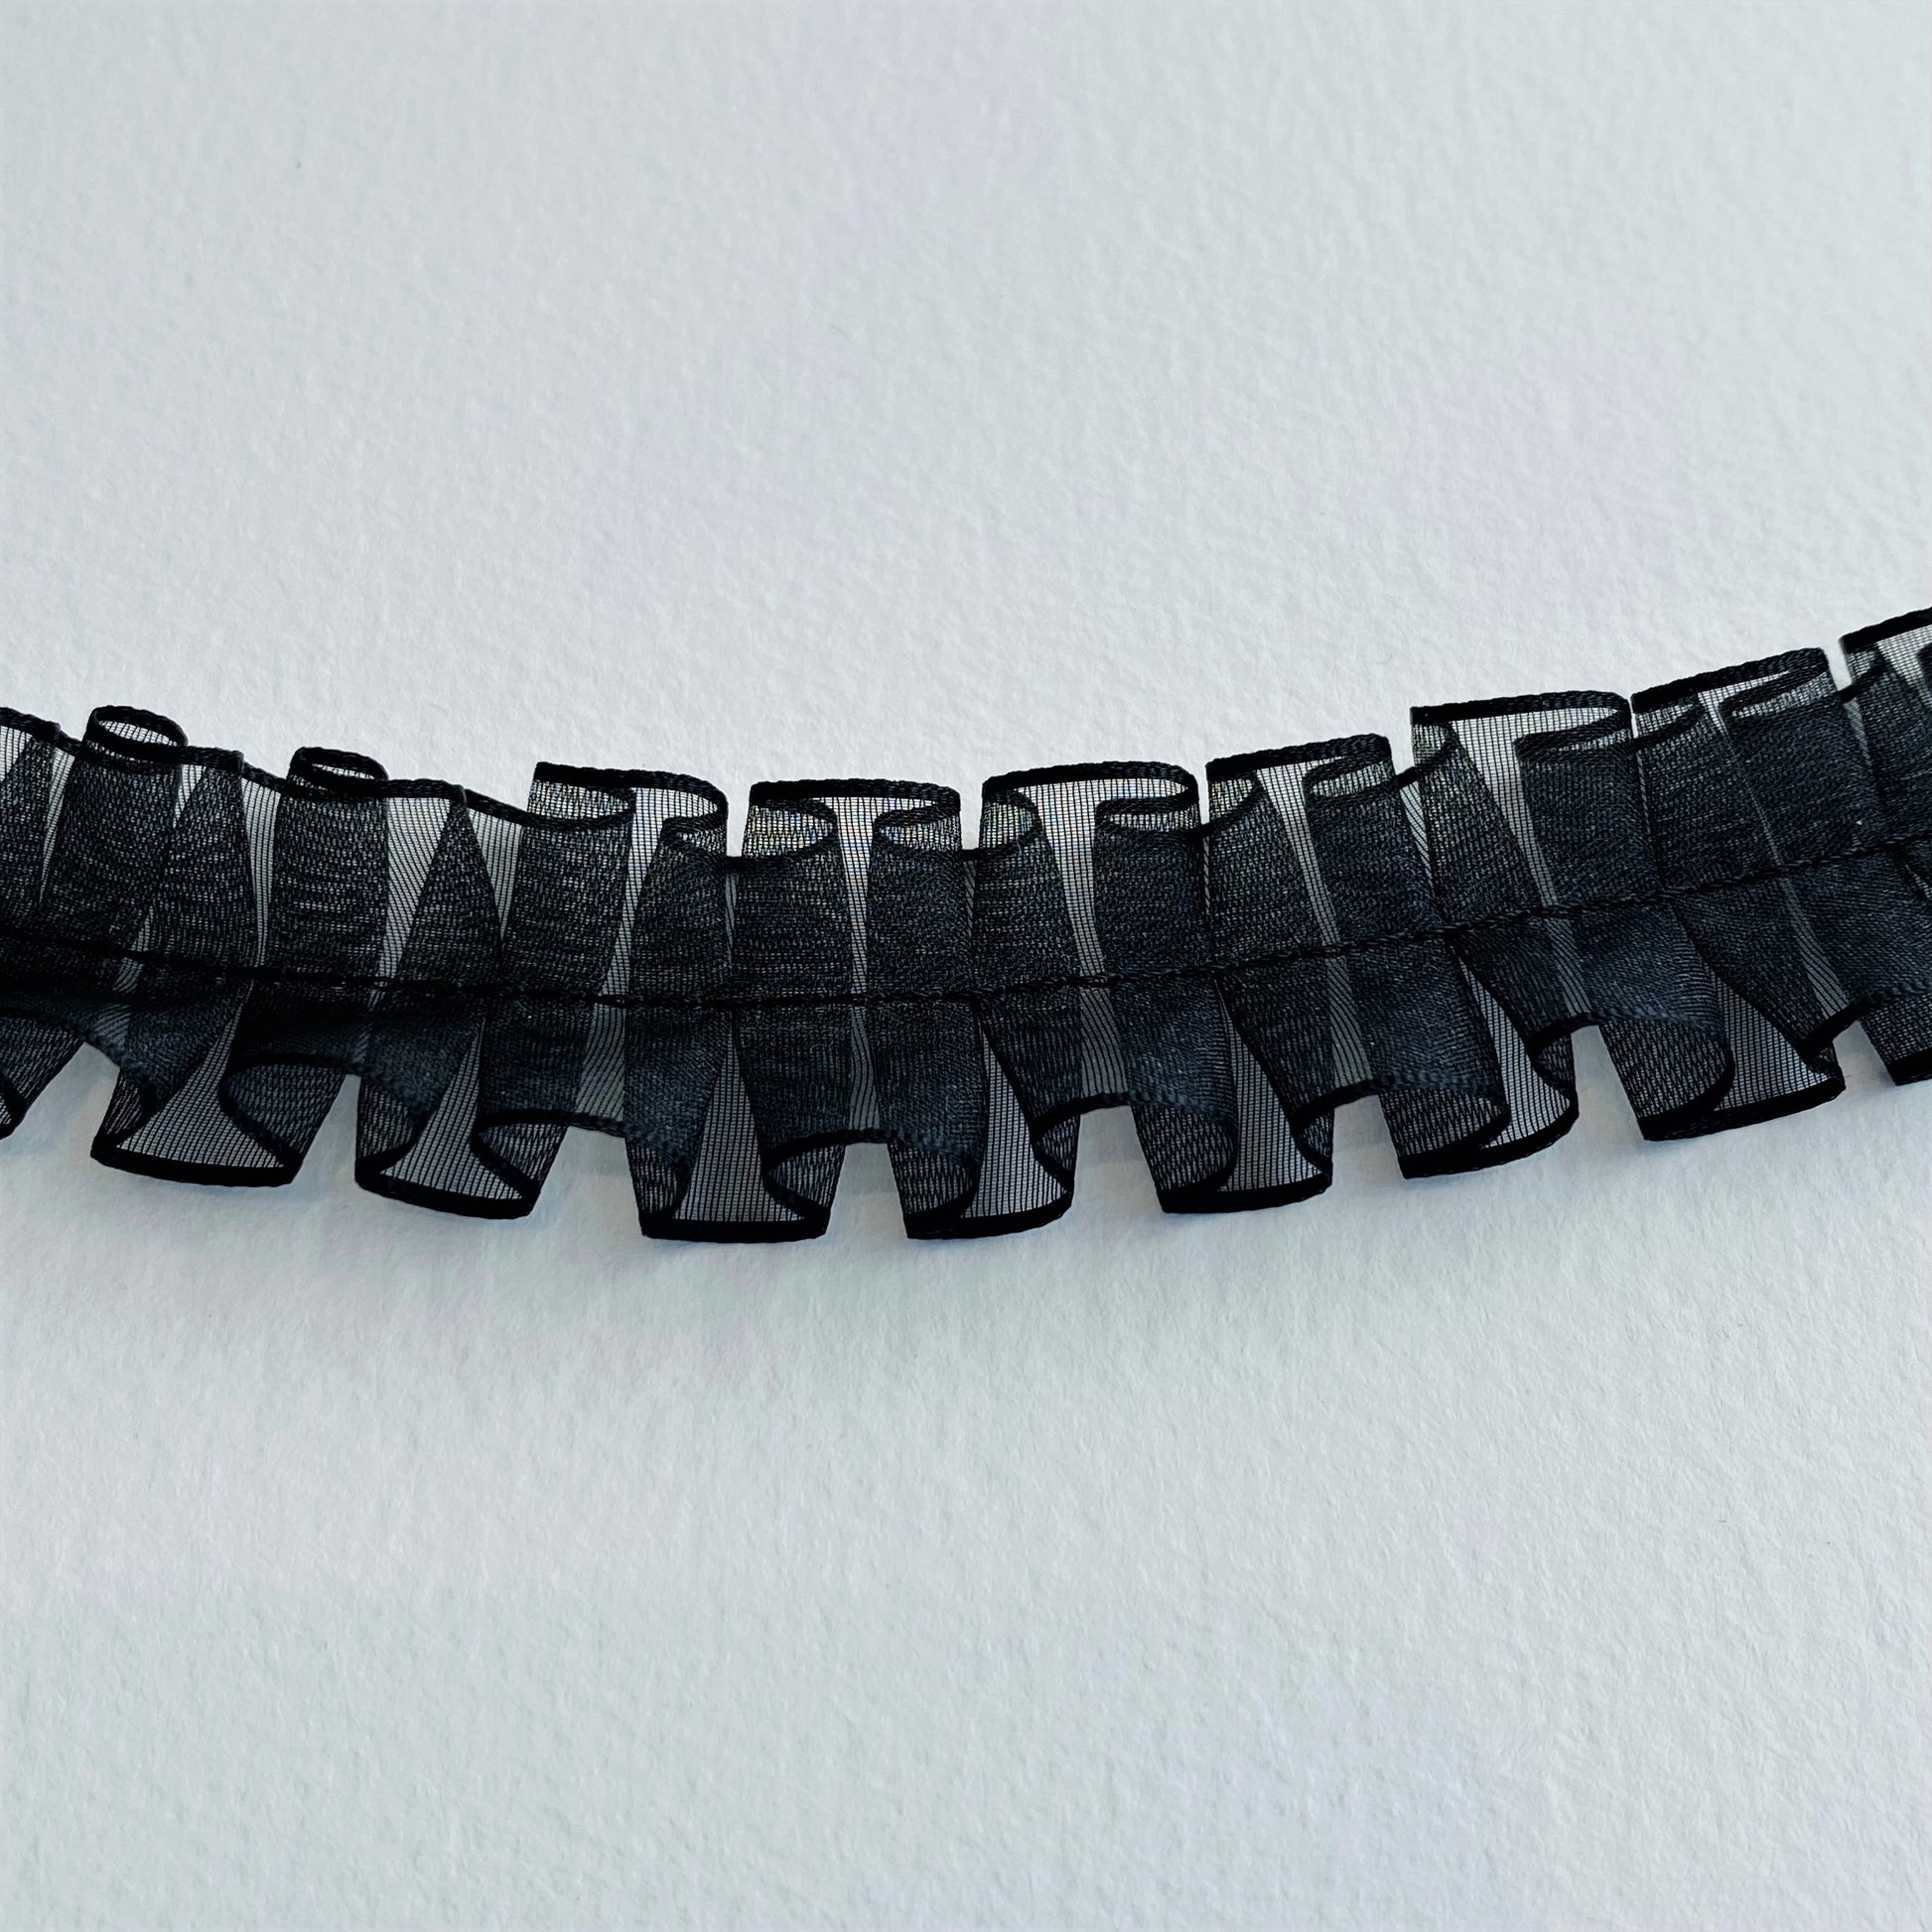 24mm Pleated Georgette ribbon by MOKUBA Japanese ribbon in black